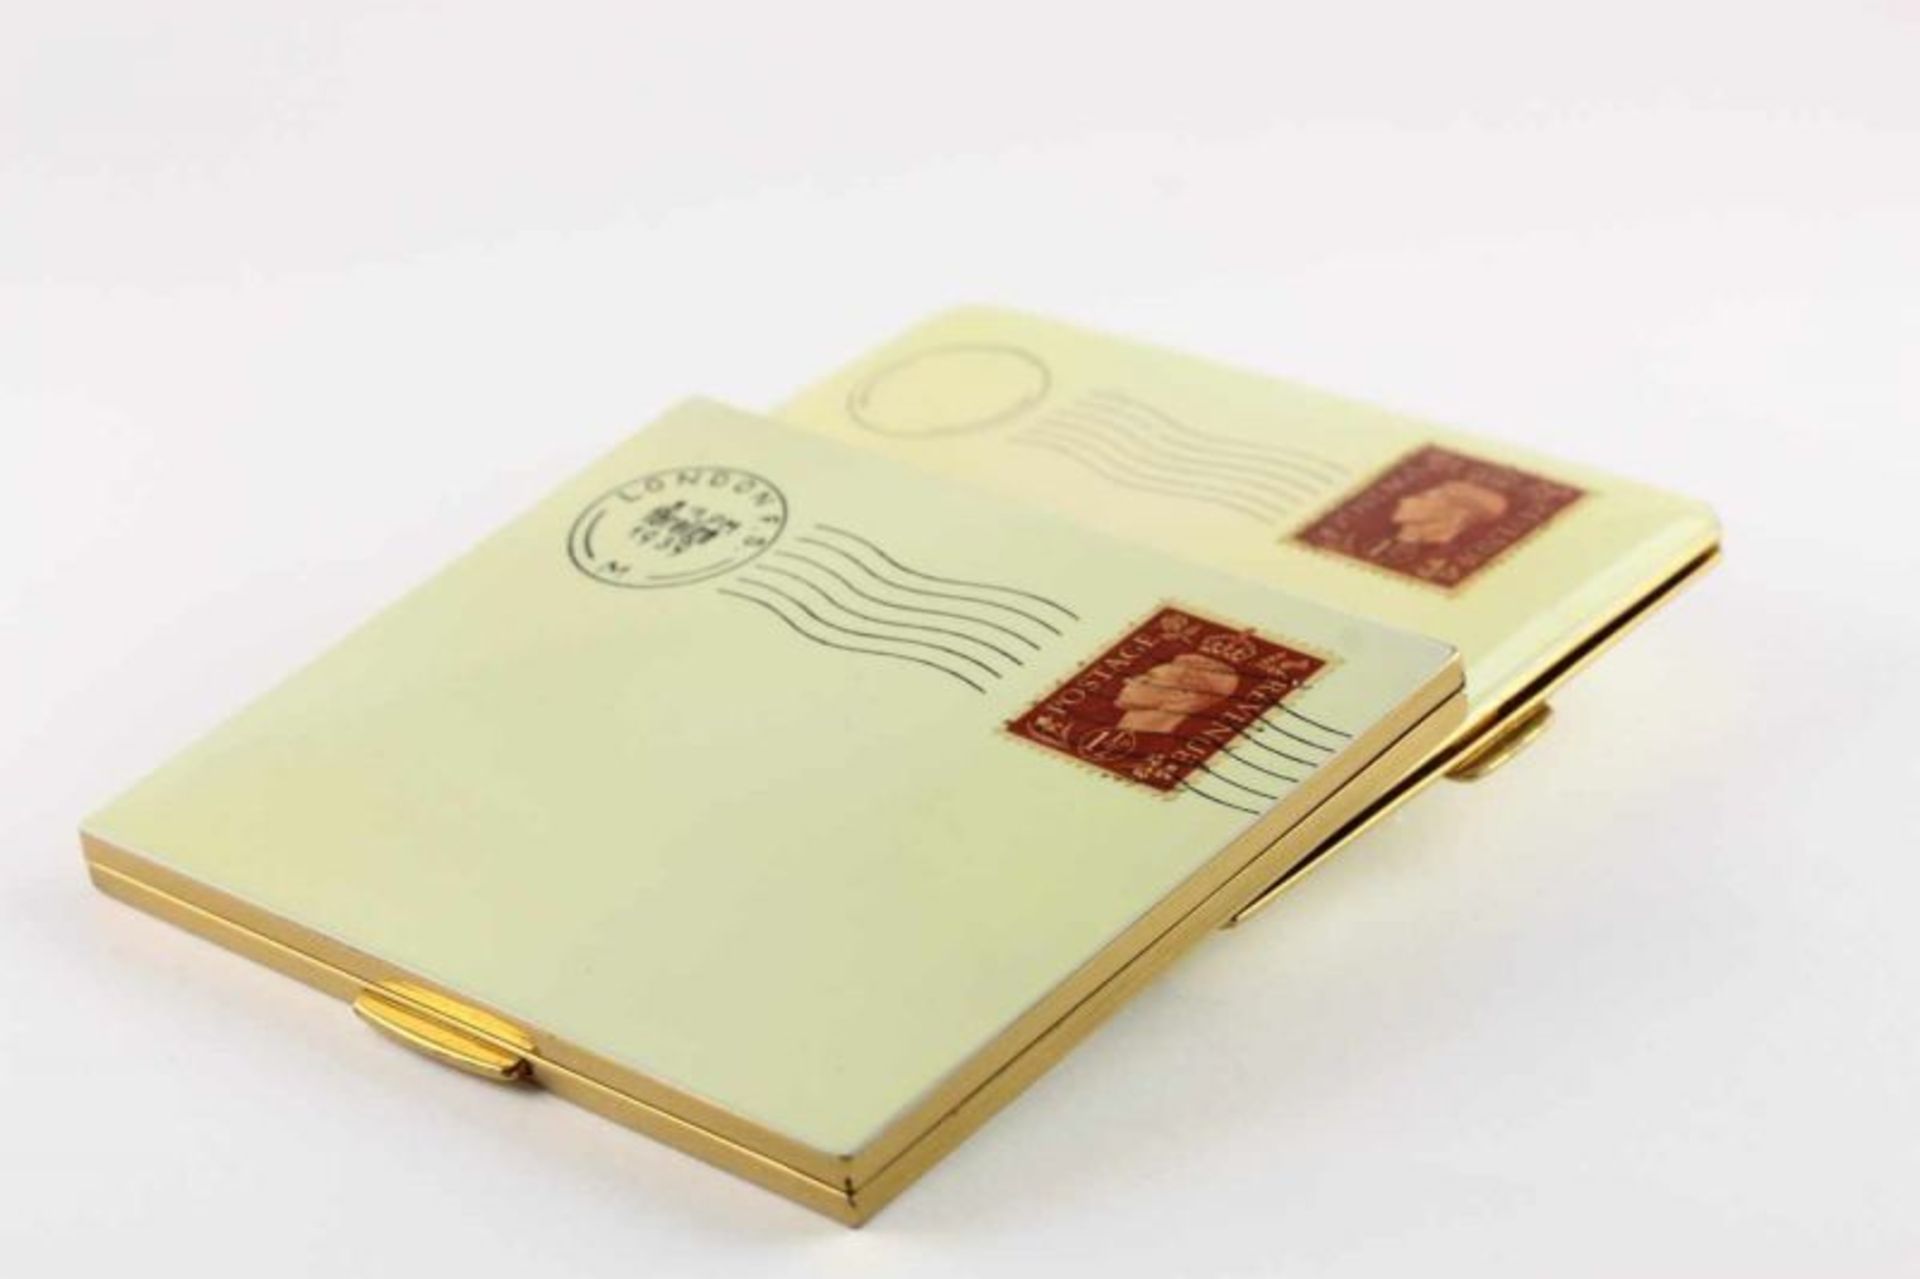 SCHMINK- UND ZIGARETTENETUI, in Form eines Briefumschlags, Metall, vergoldet, emailliert, mit - Bild 2 aus 2